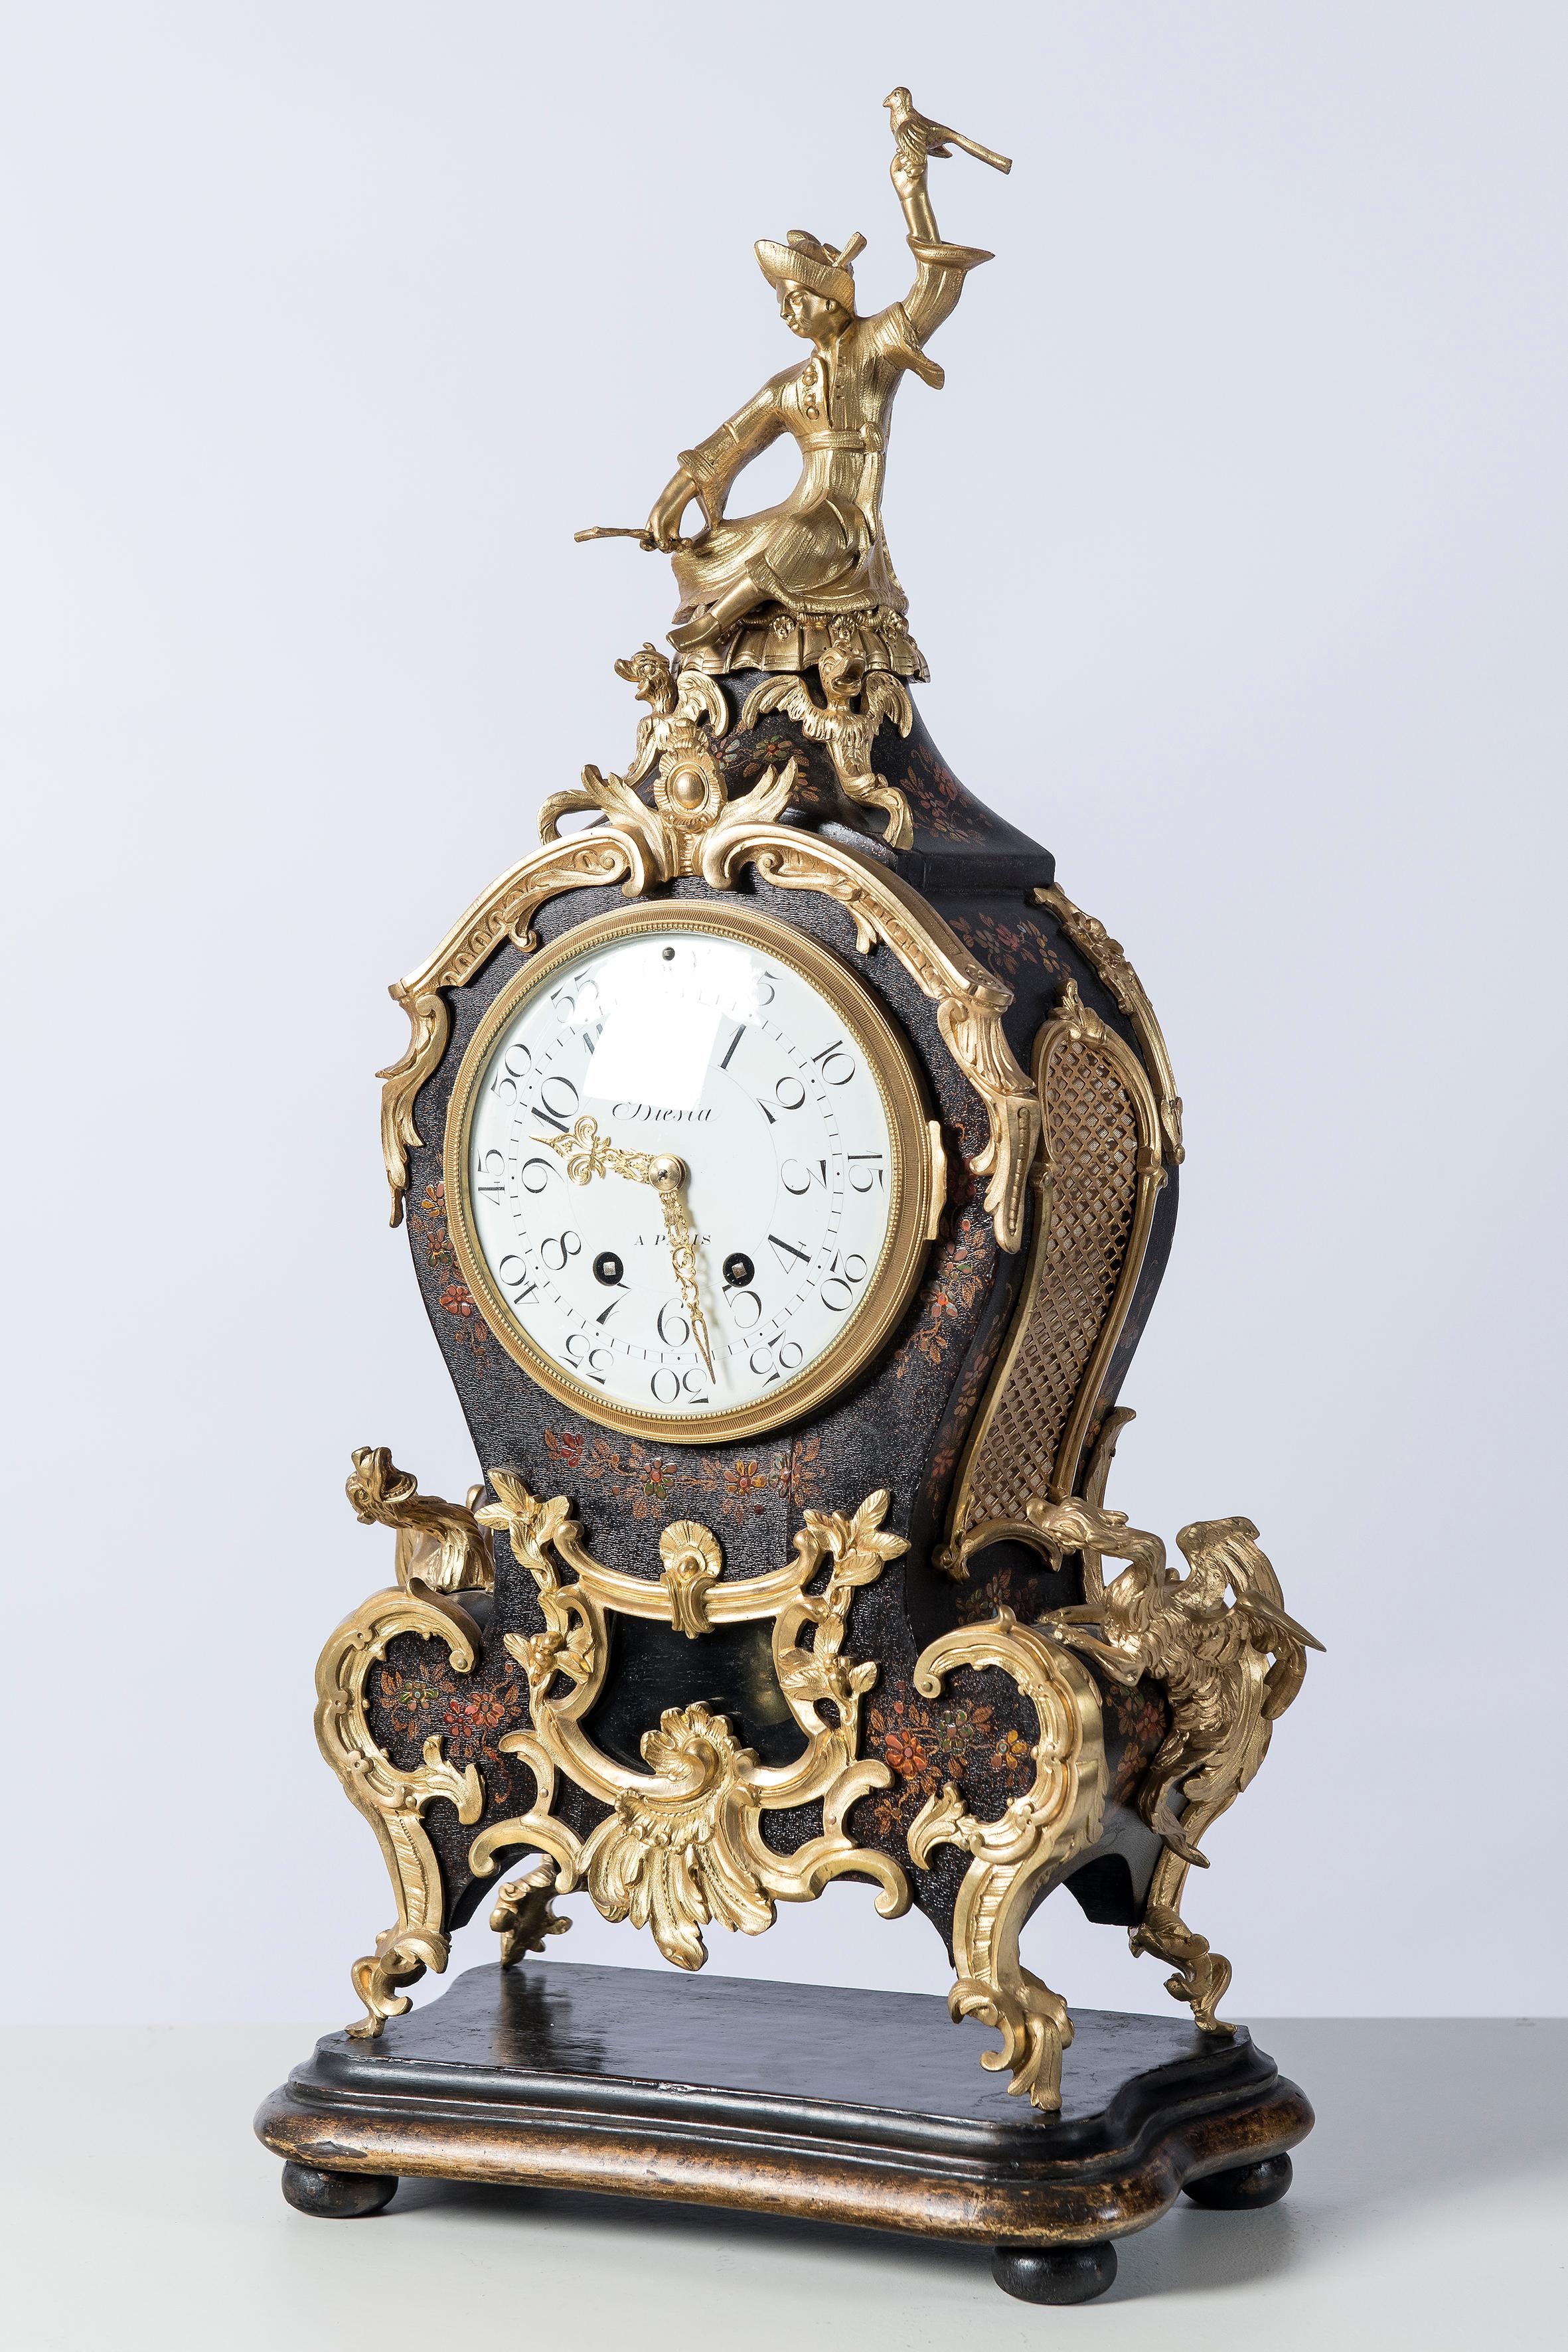 Horloge de table en bronze doré et bois. Pendule signée Biesta, Paris, vers 1890.